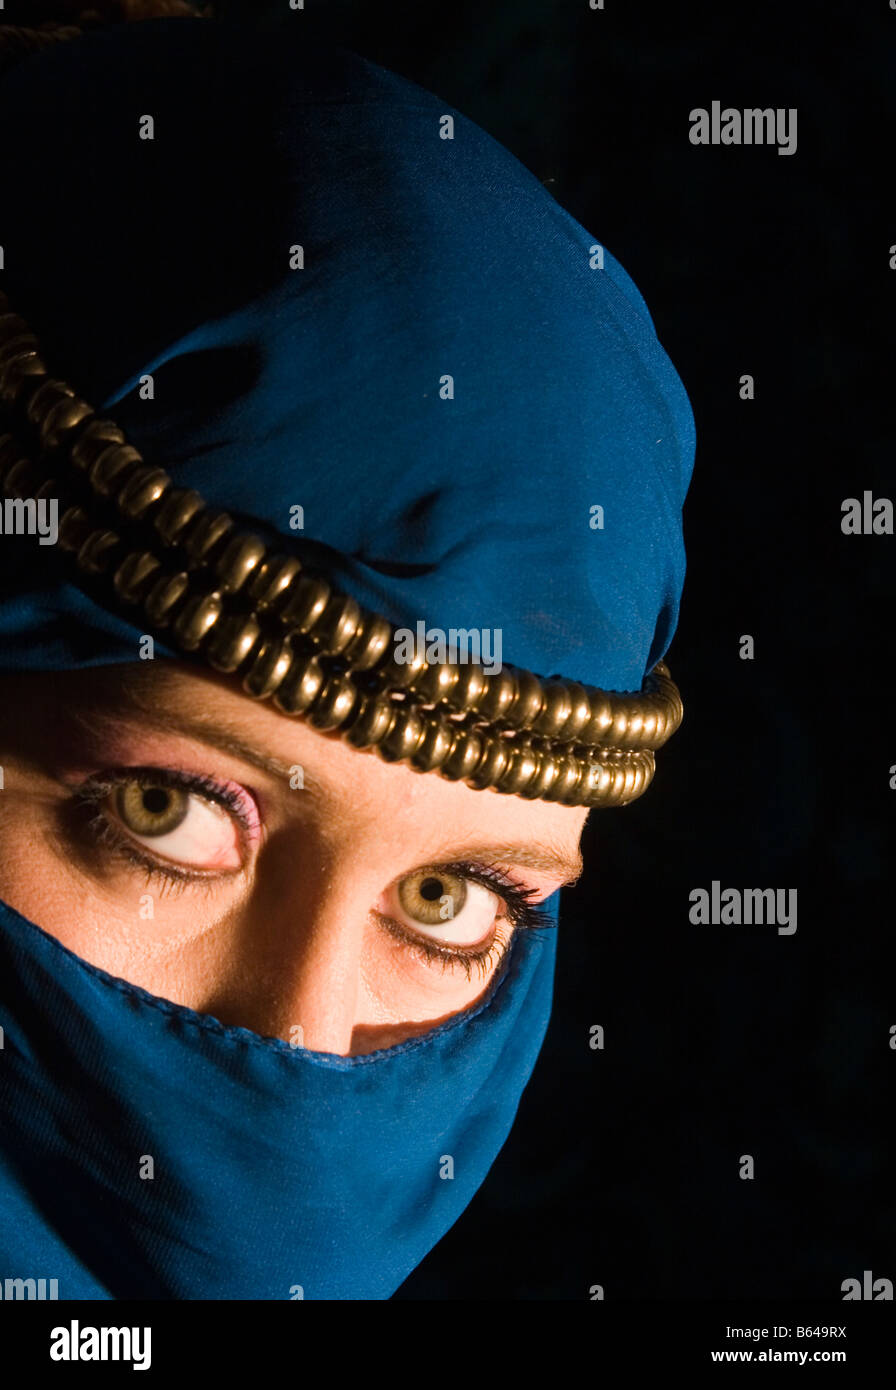 Mujer joven con decoración tipo yashmak headress y velo que le cubre el rostro Foto de stock